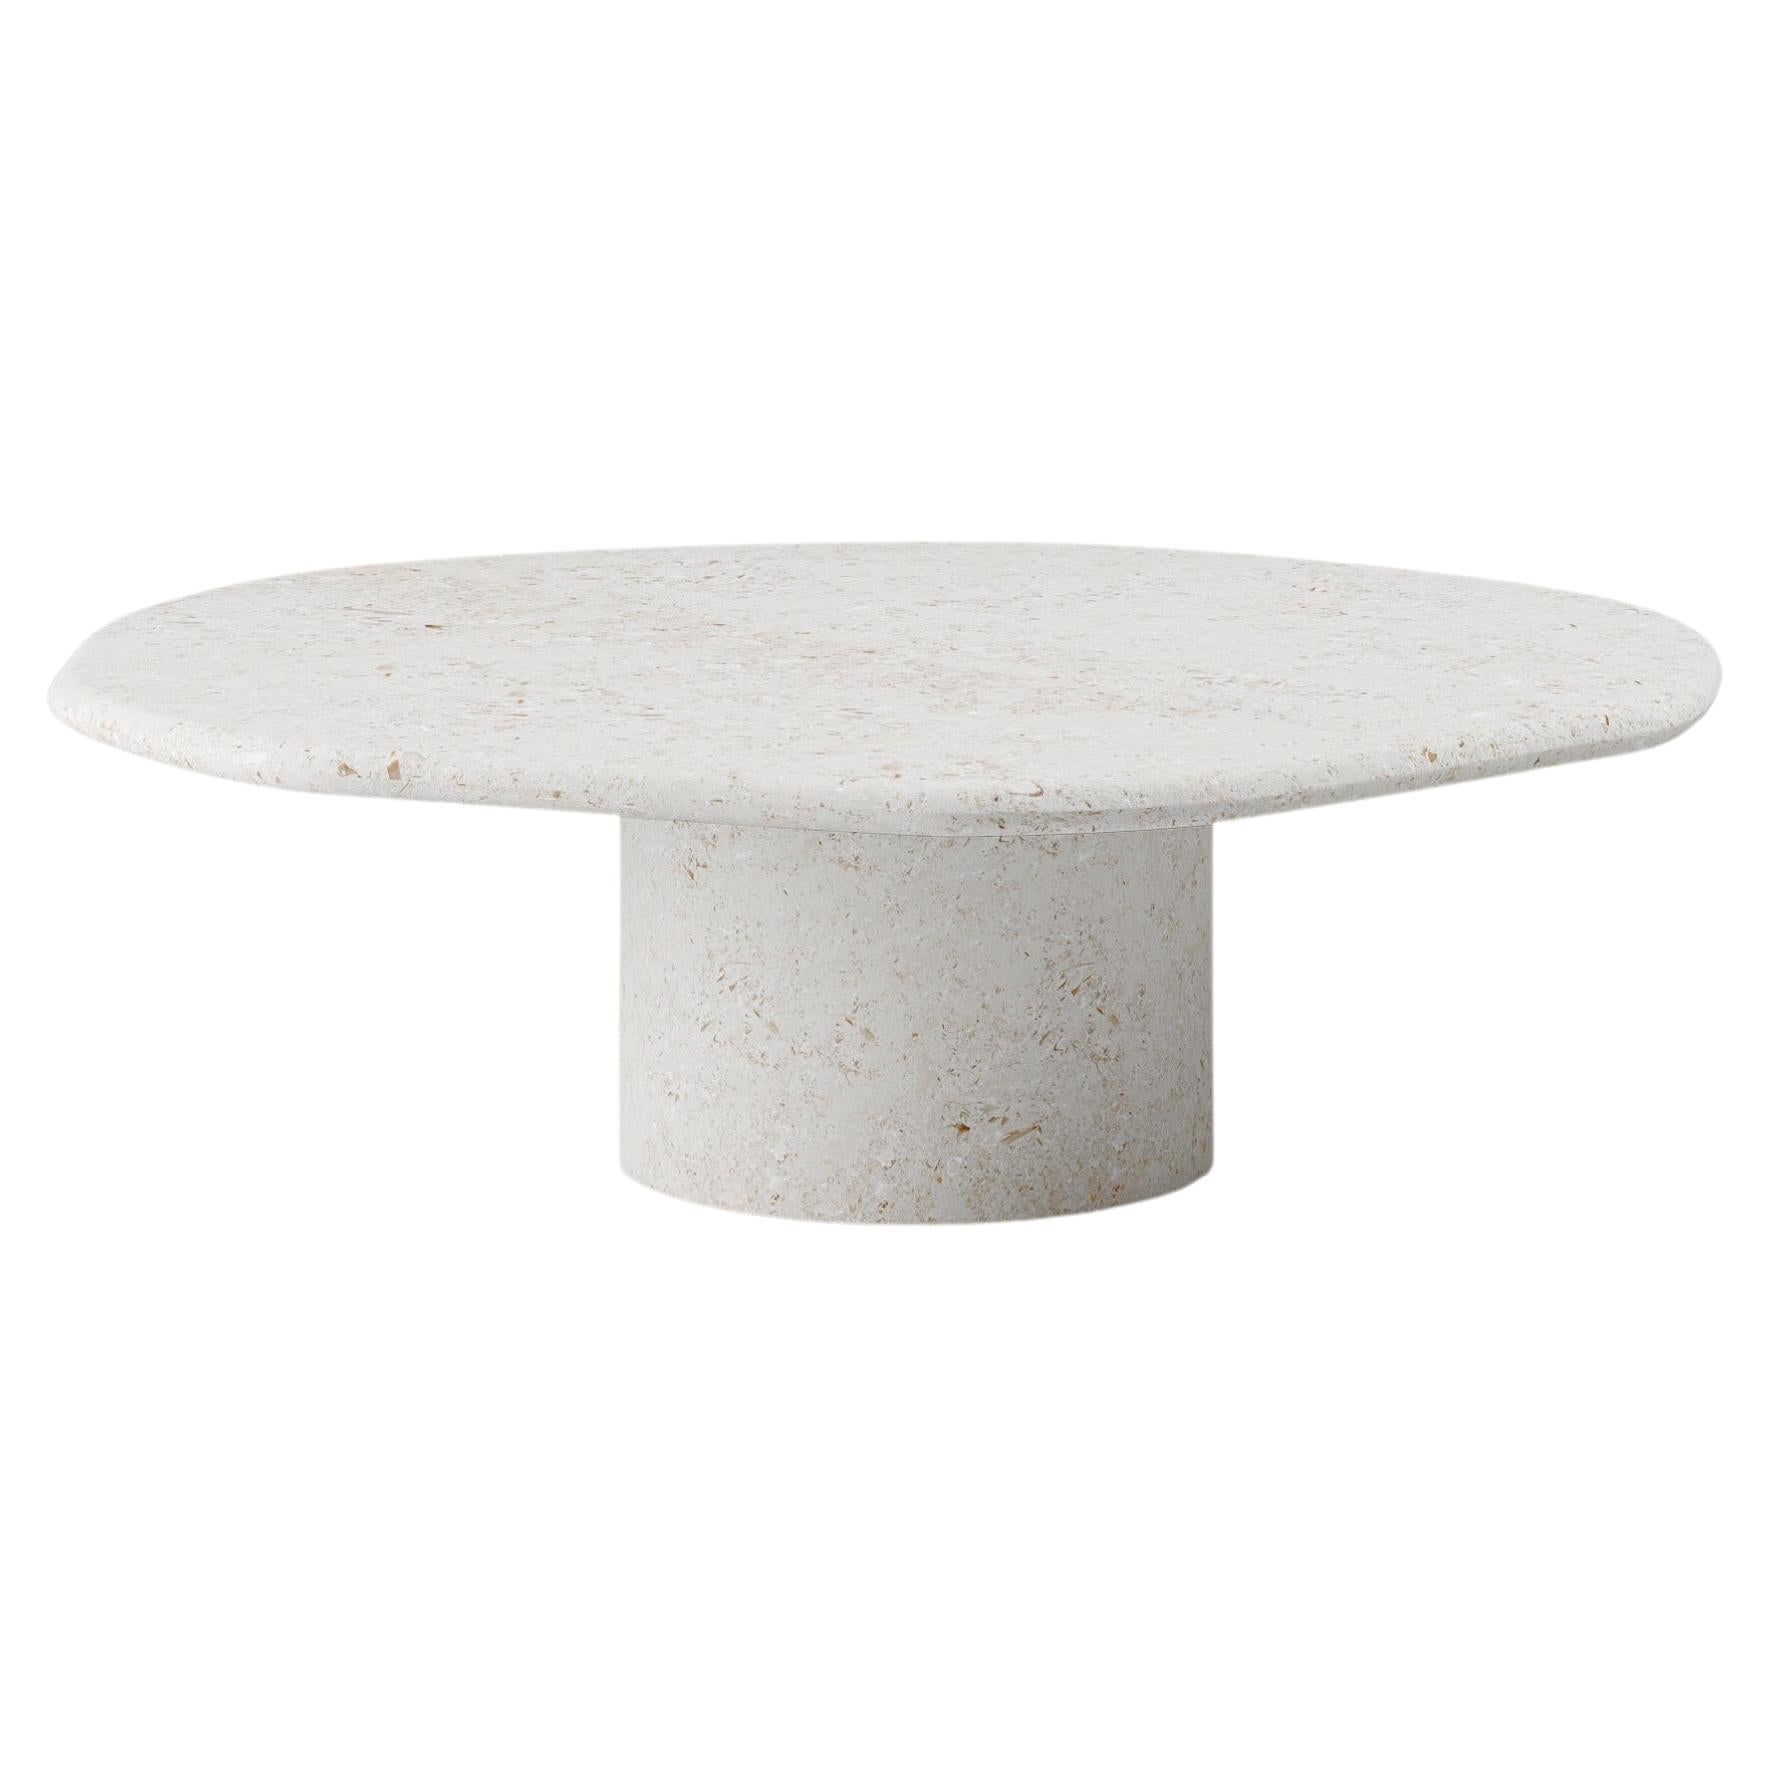 FORM(LA) Lago Round Coffee Table 42”L x 42”W x 14”H Limestone Oceano For Sale